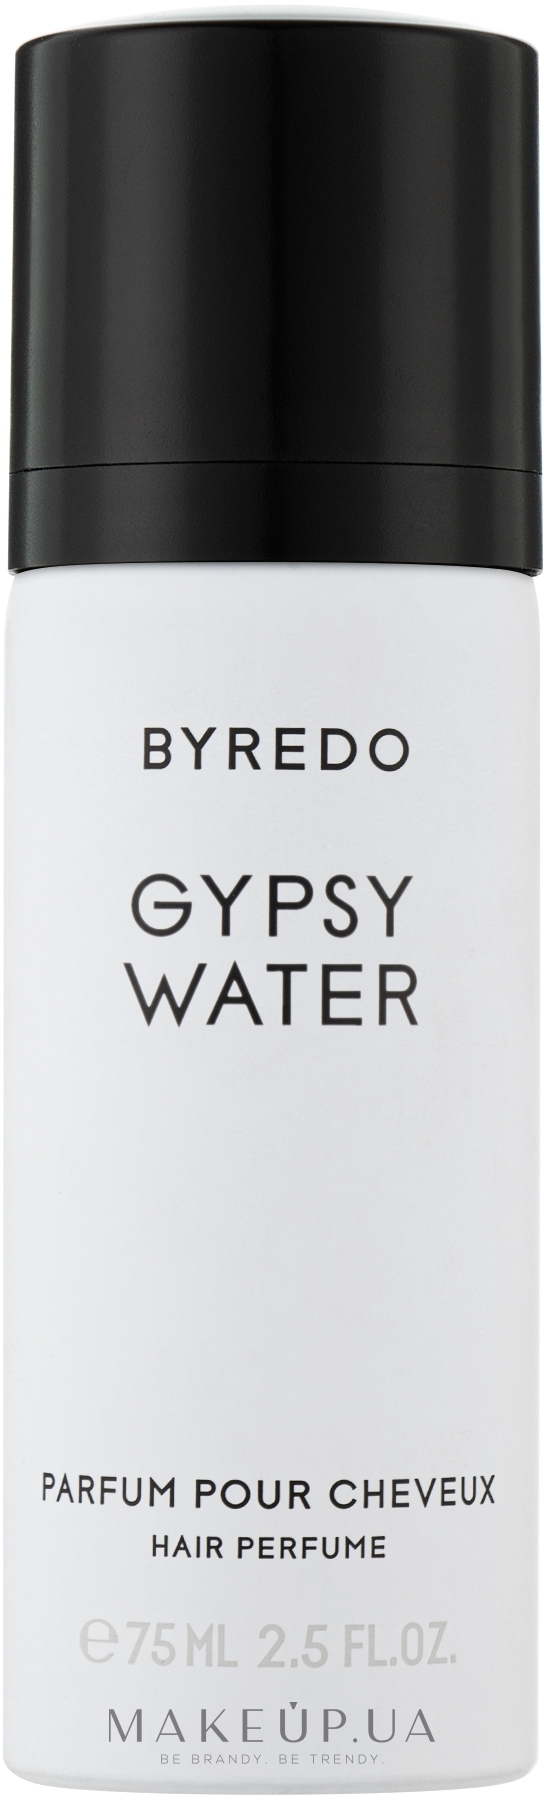 Byredo Gypsy Water - Парфюмированная вода для волос — фото 75ml